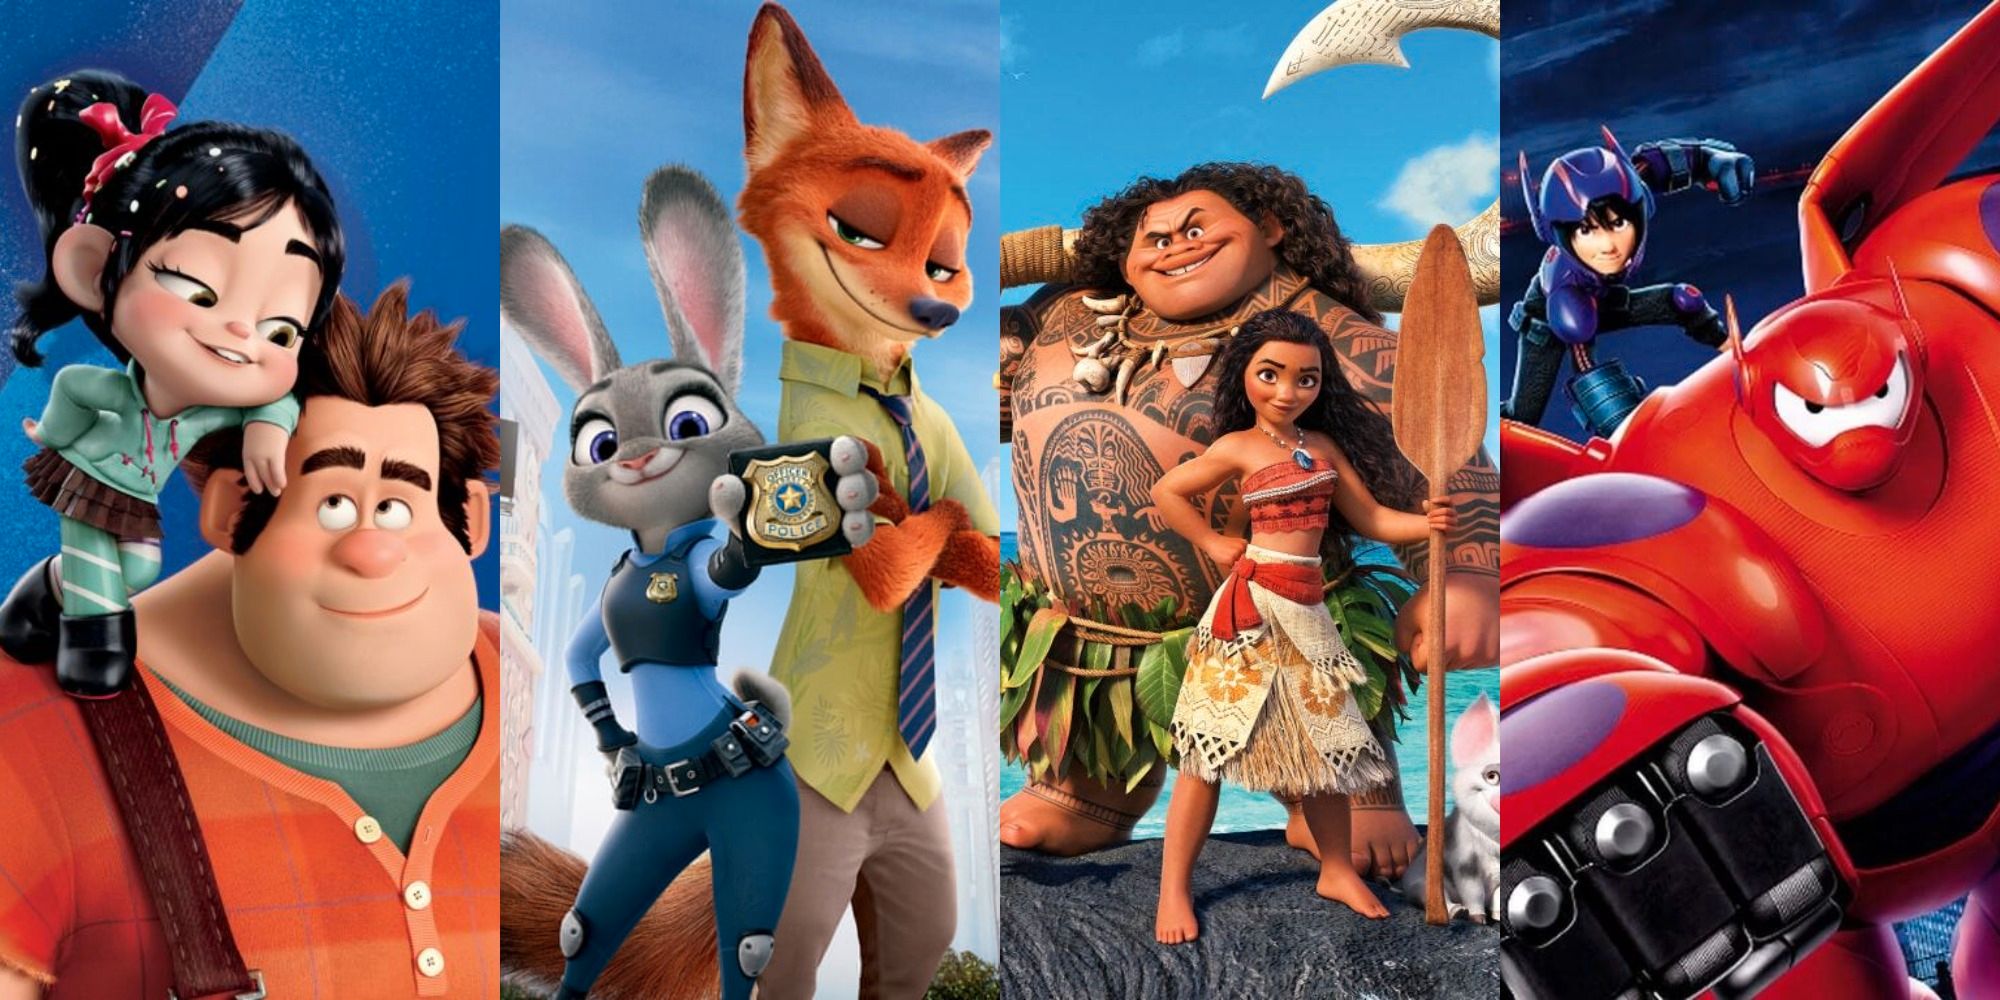 Las 15 mejores películas animadas de Disney de la década de 2010 (según IMDb)